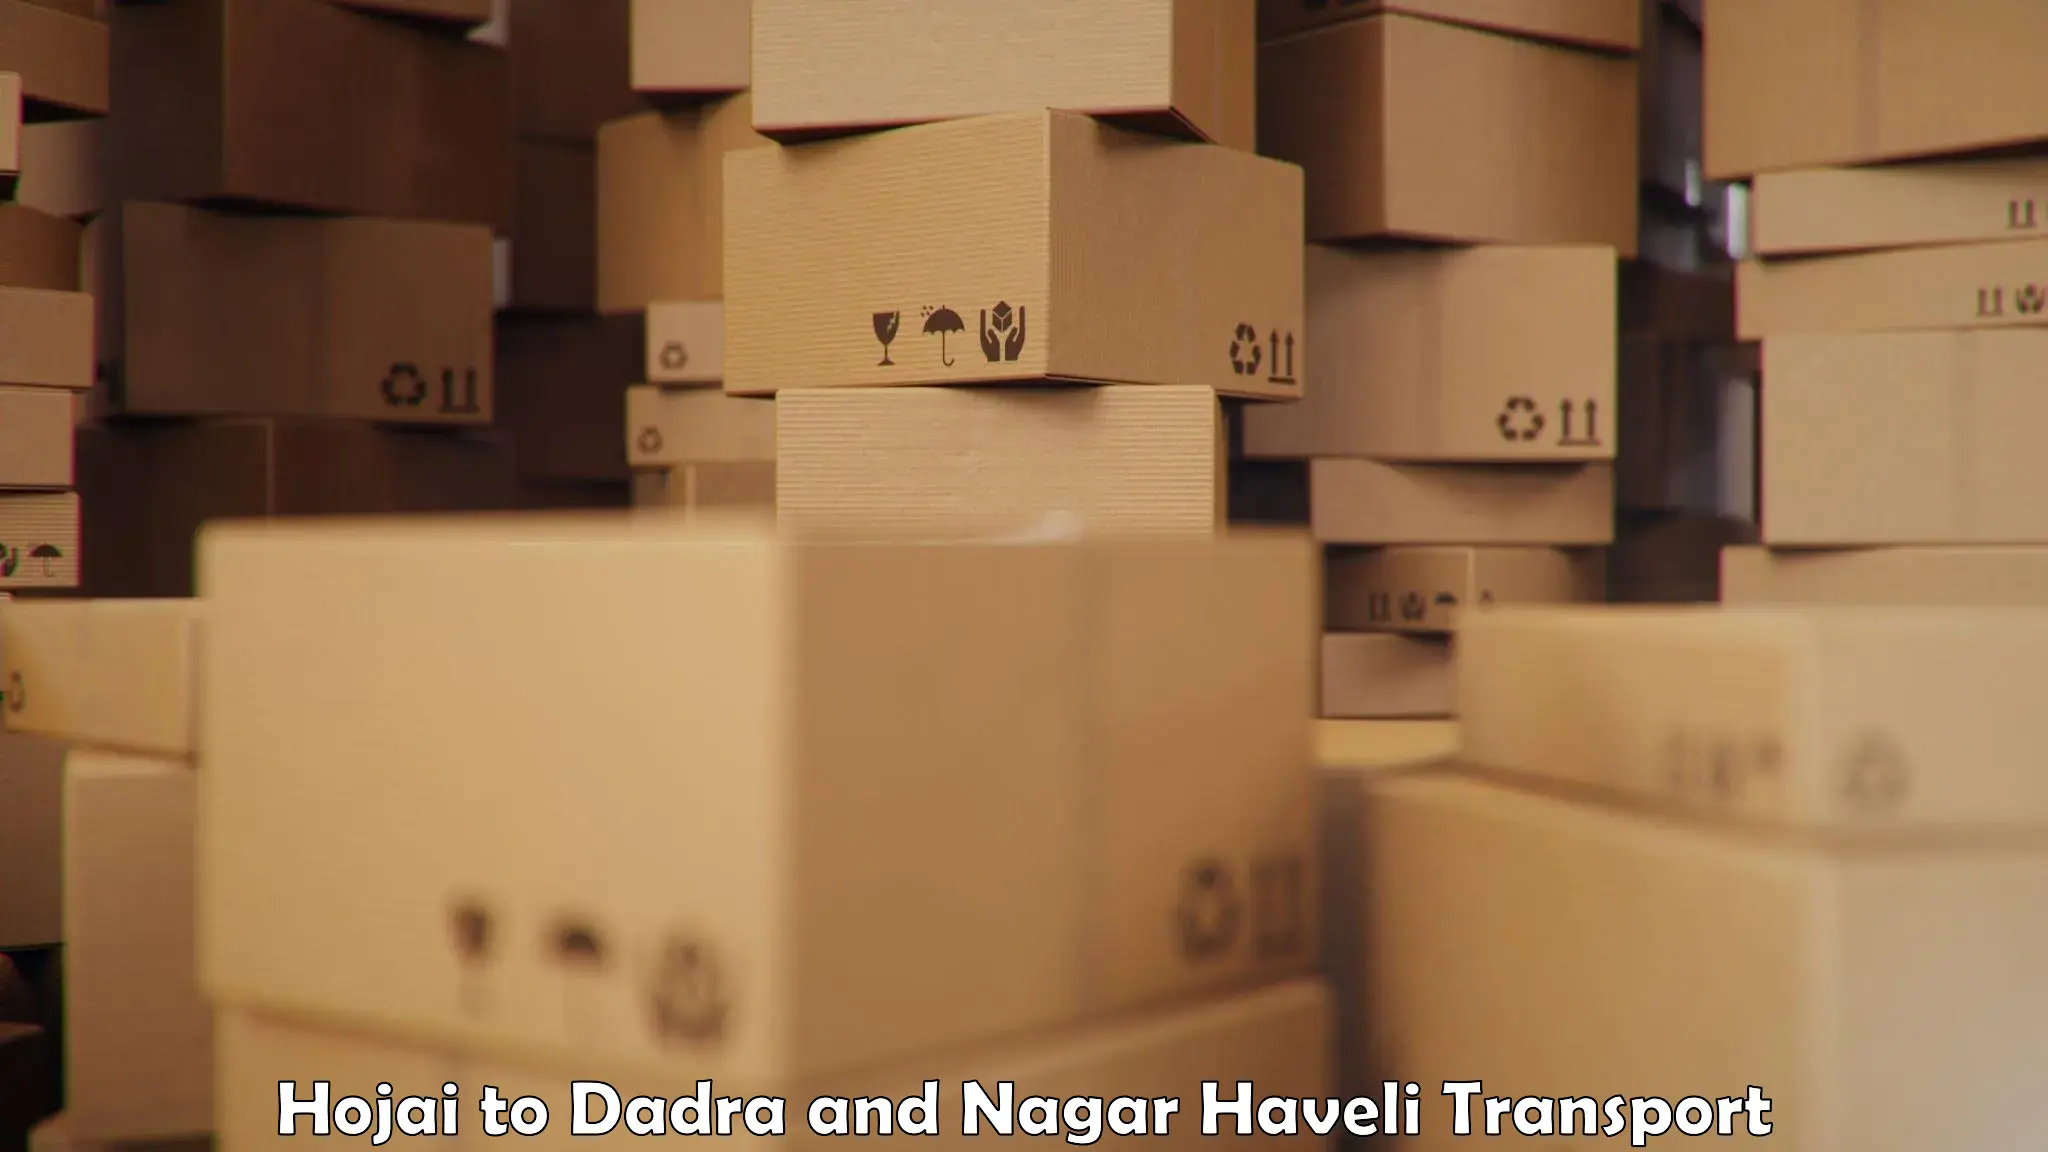 Lorry transport service Hojai to Dadra and Nagar Haveli